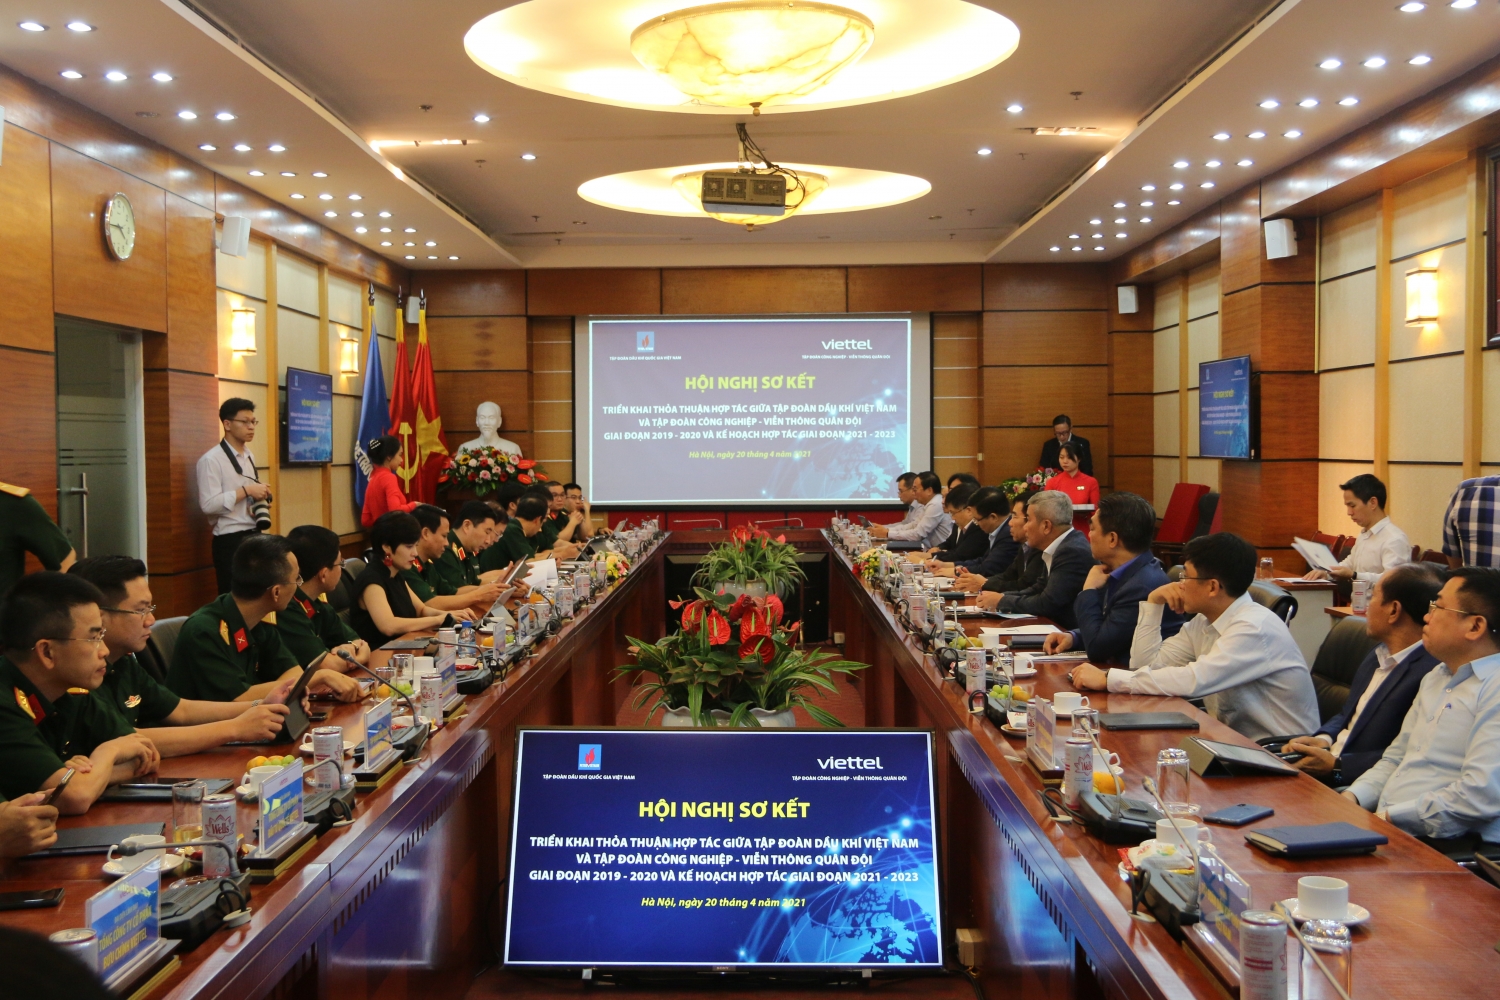 Petrovietnam và Viettel tổ chức hội nghị sơ kết triển khai thỏa thuận hợp tác giai đoạn 2019-2020